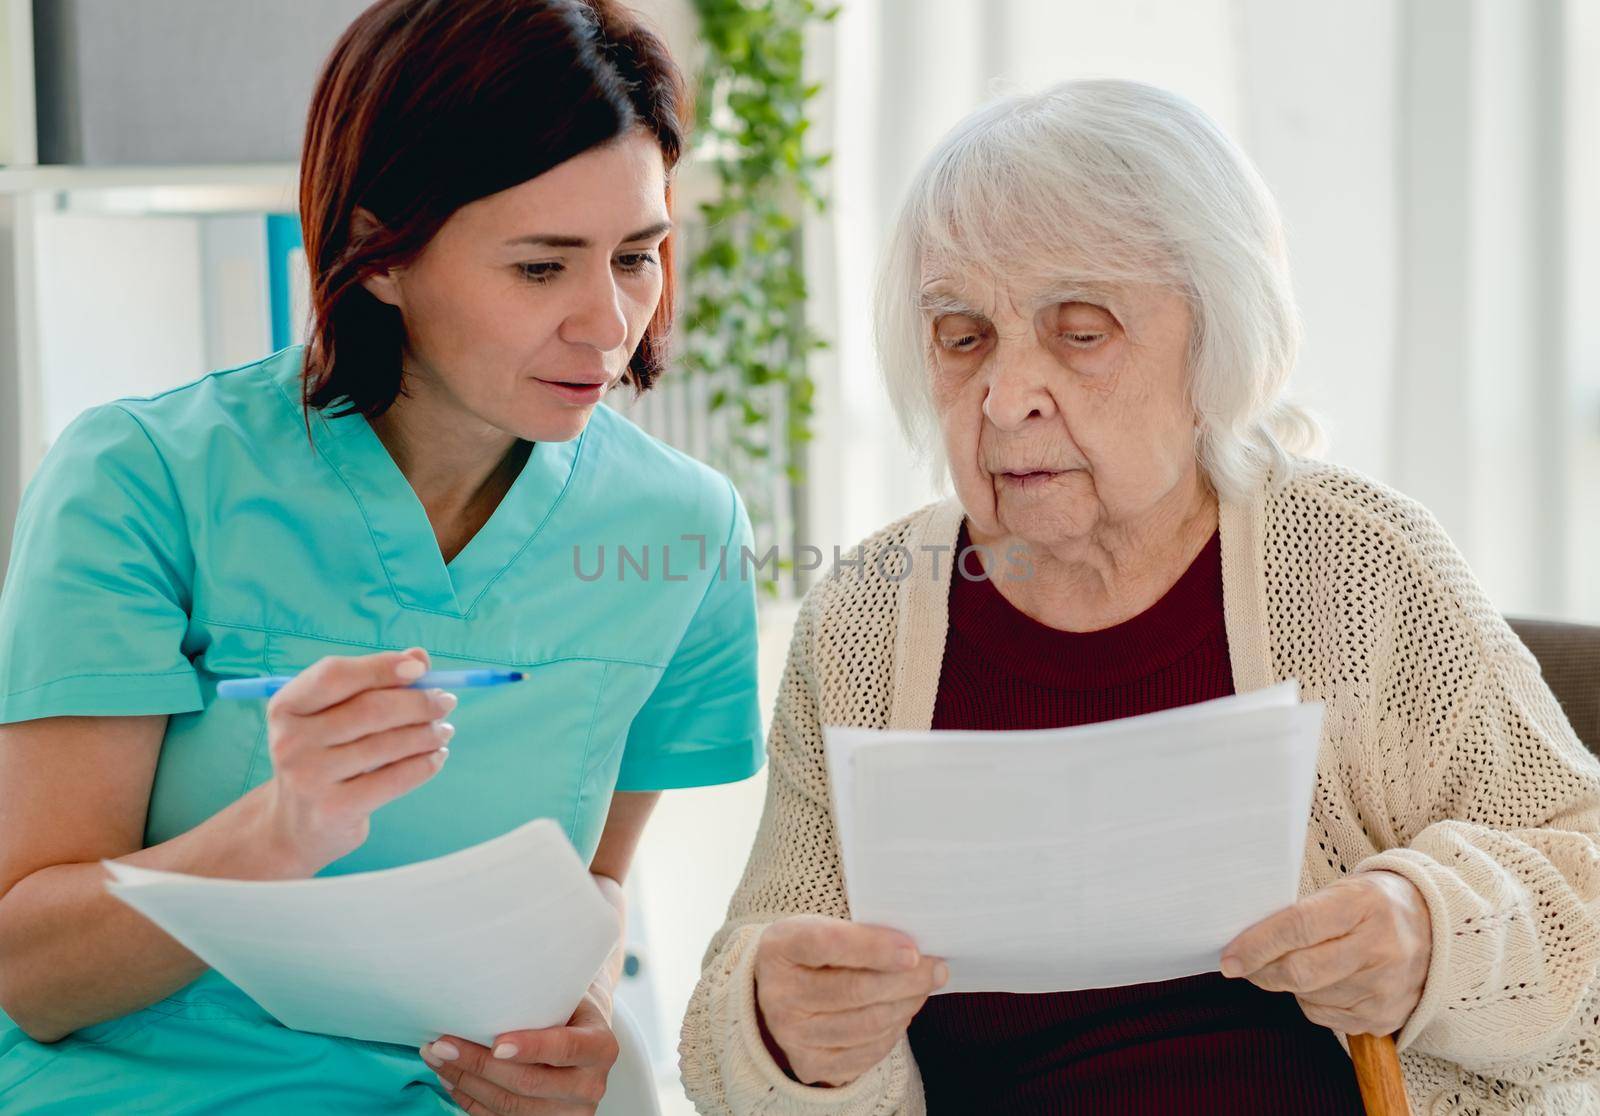 Nurse talking with elderly woman patient by tan4ikk1